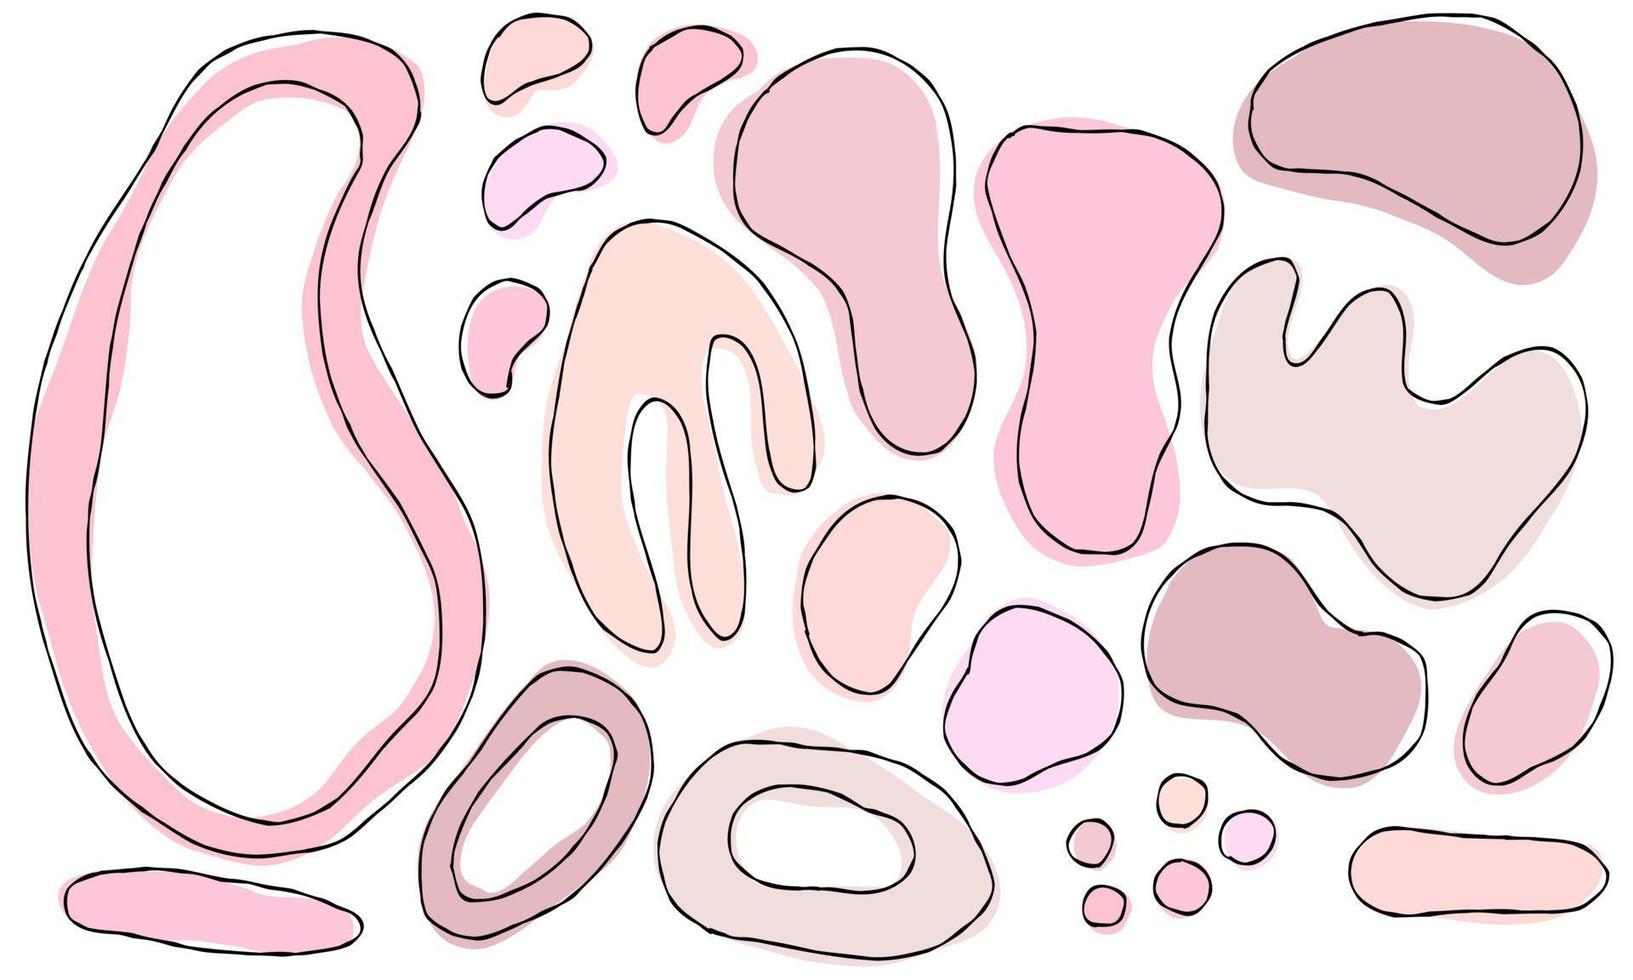 collezione astratta decorativa disegnata a mano con elementi doodle rosa pastello. cerchi vettoriali, linee simpatiche. vettore